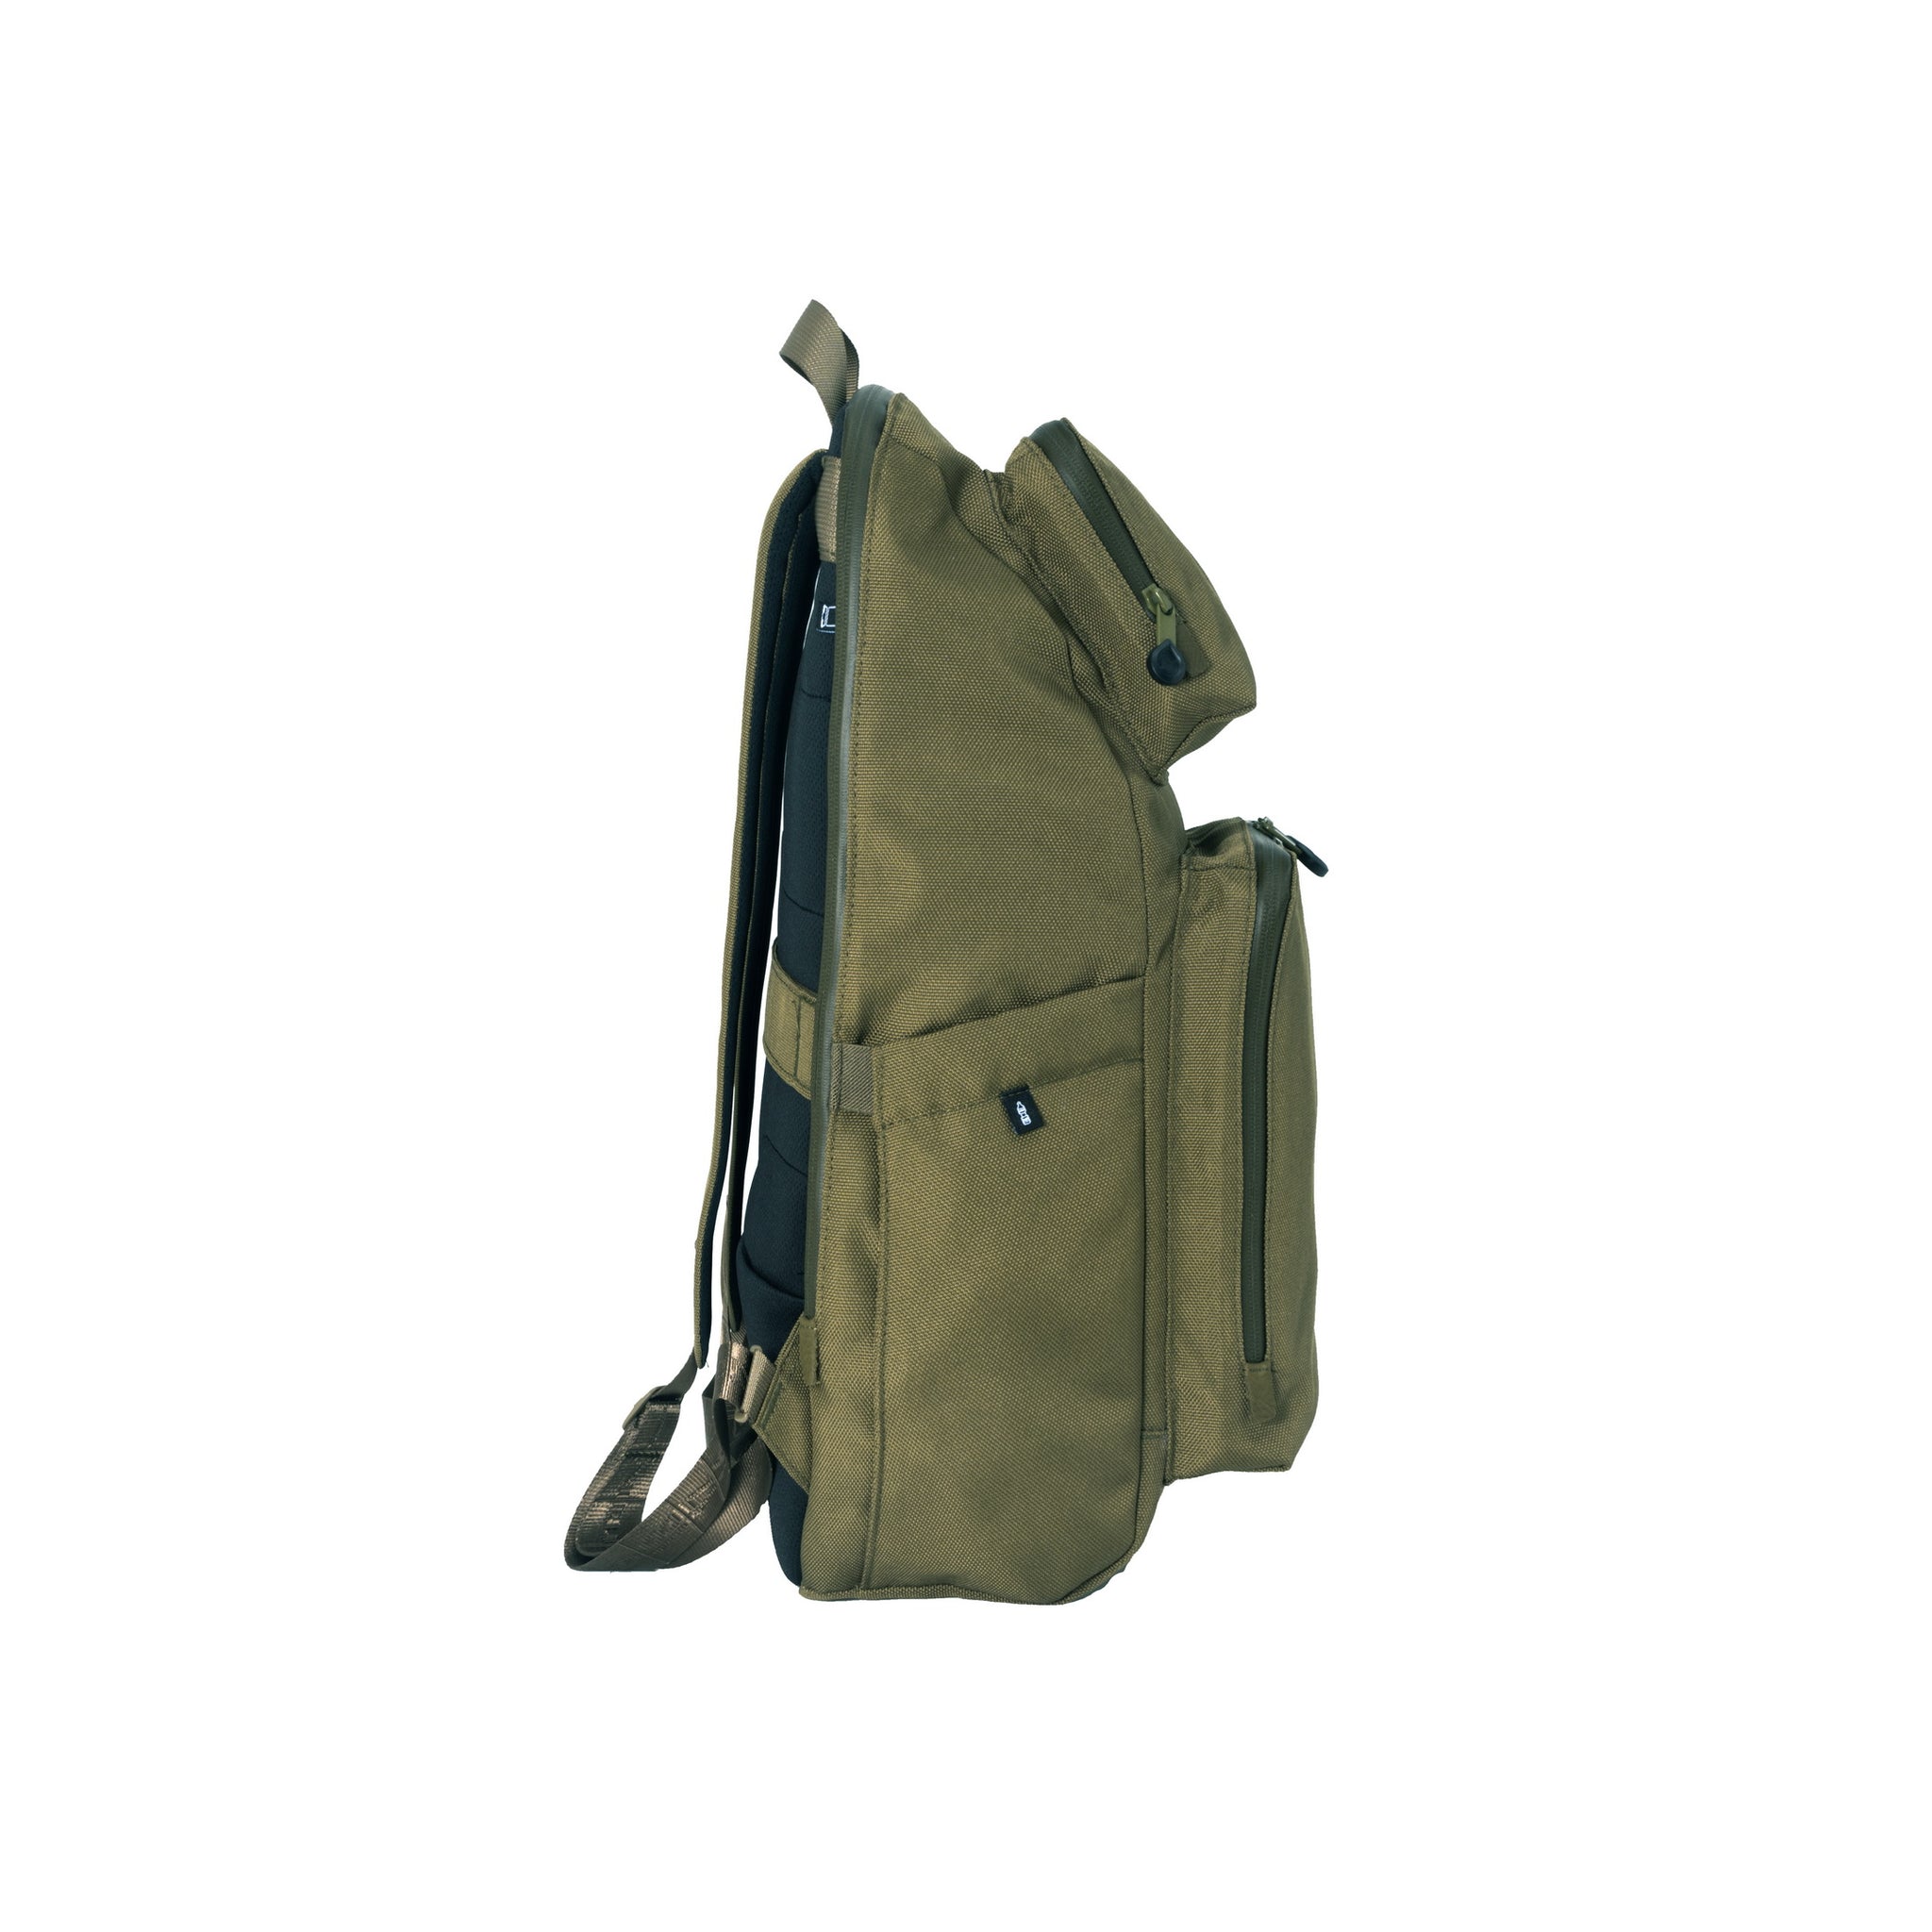 多功能用途 (輕巧版) - Bibi 背包 - 橄欖綠